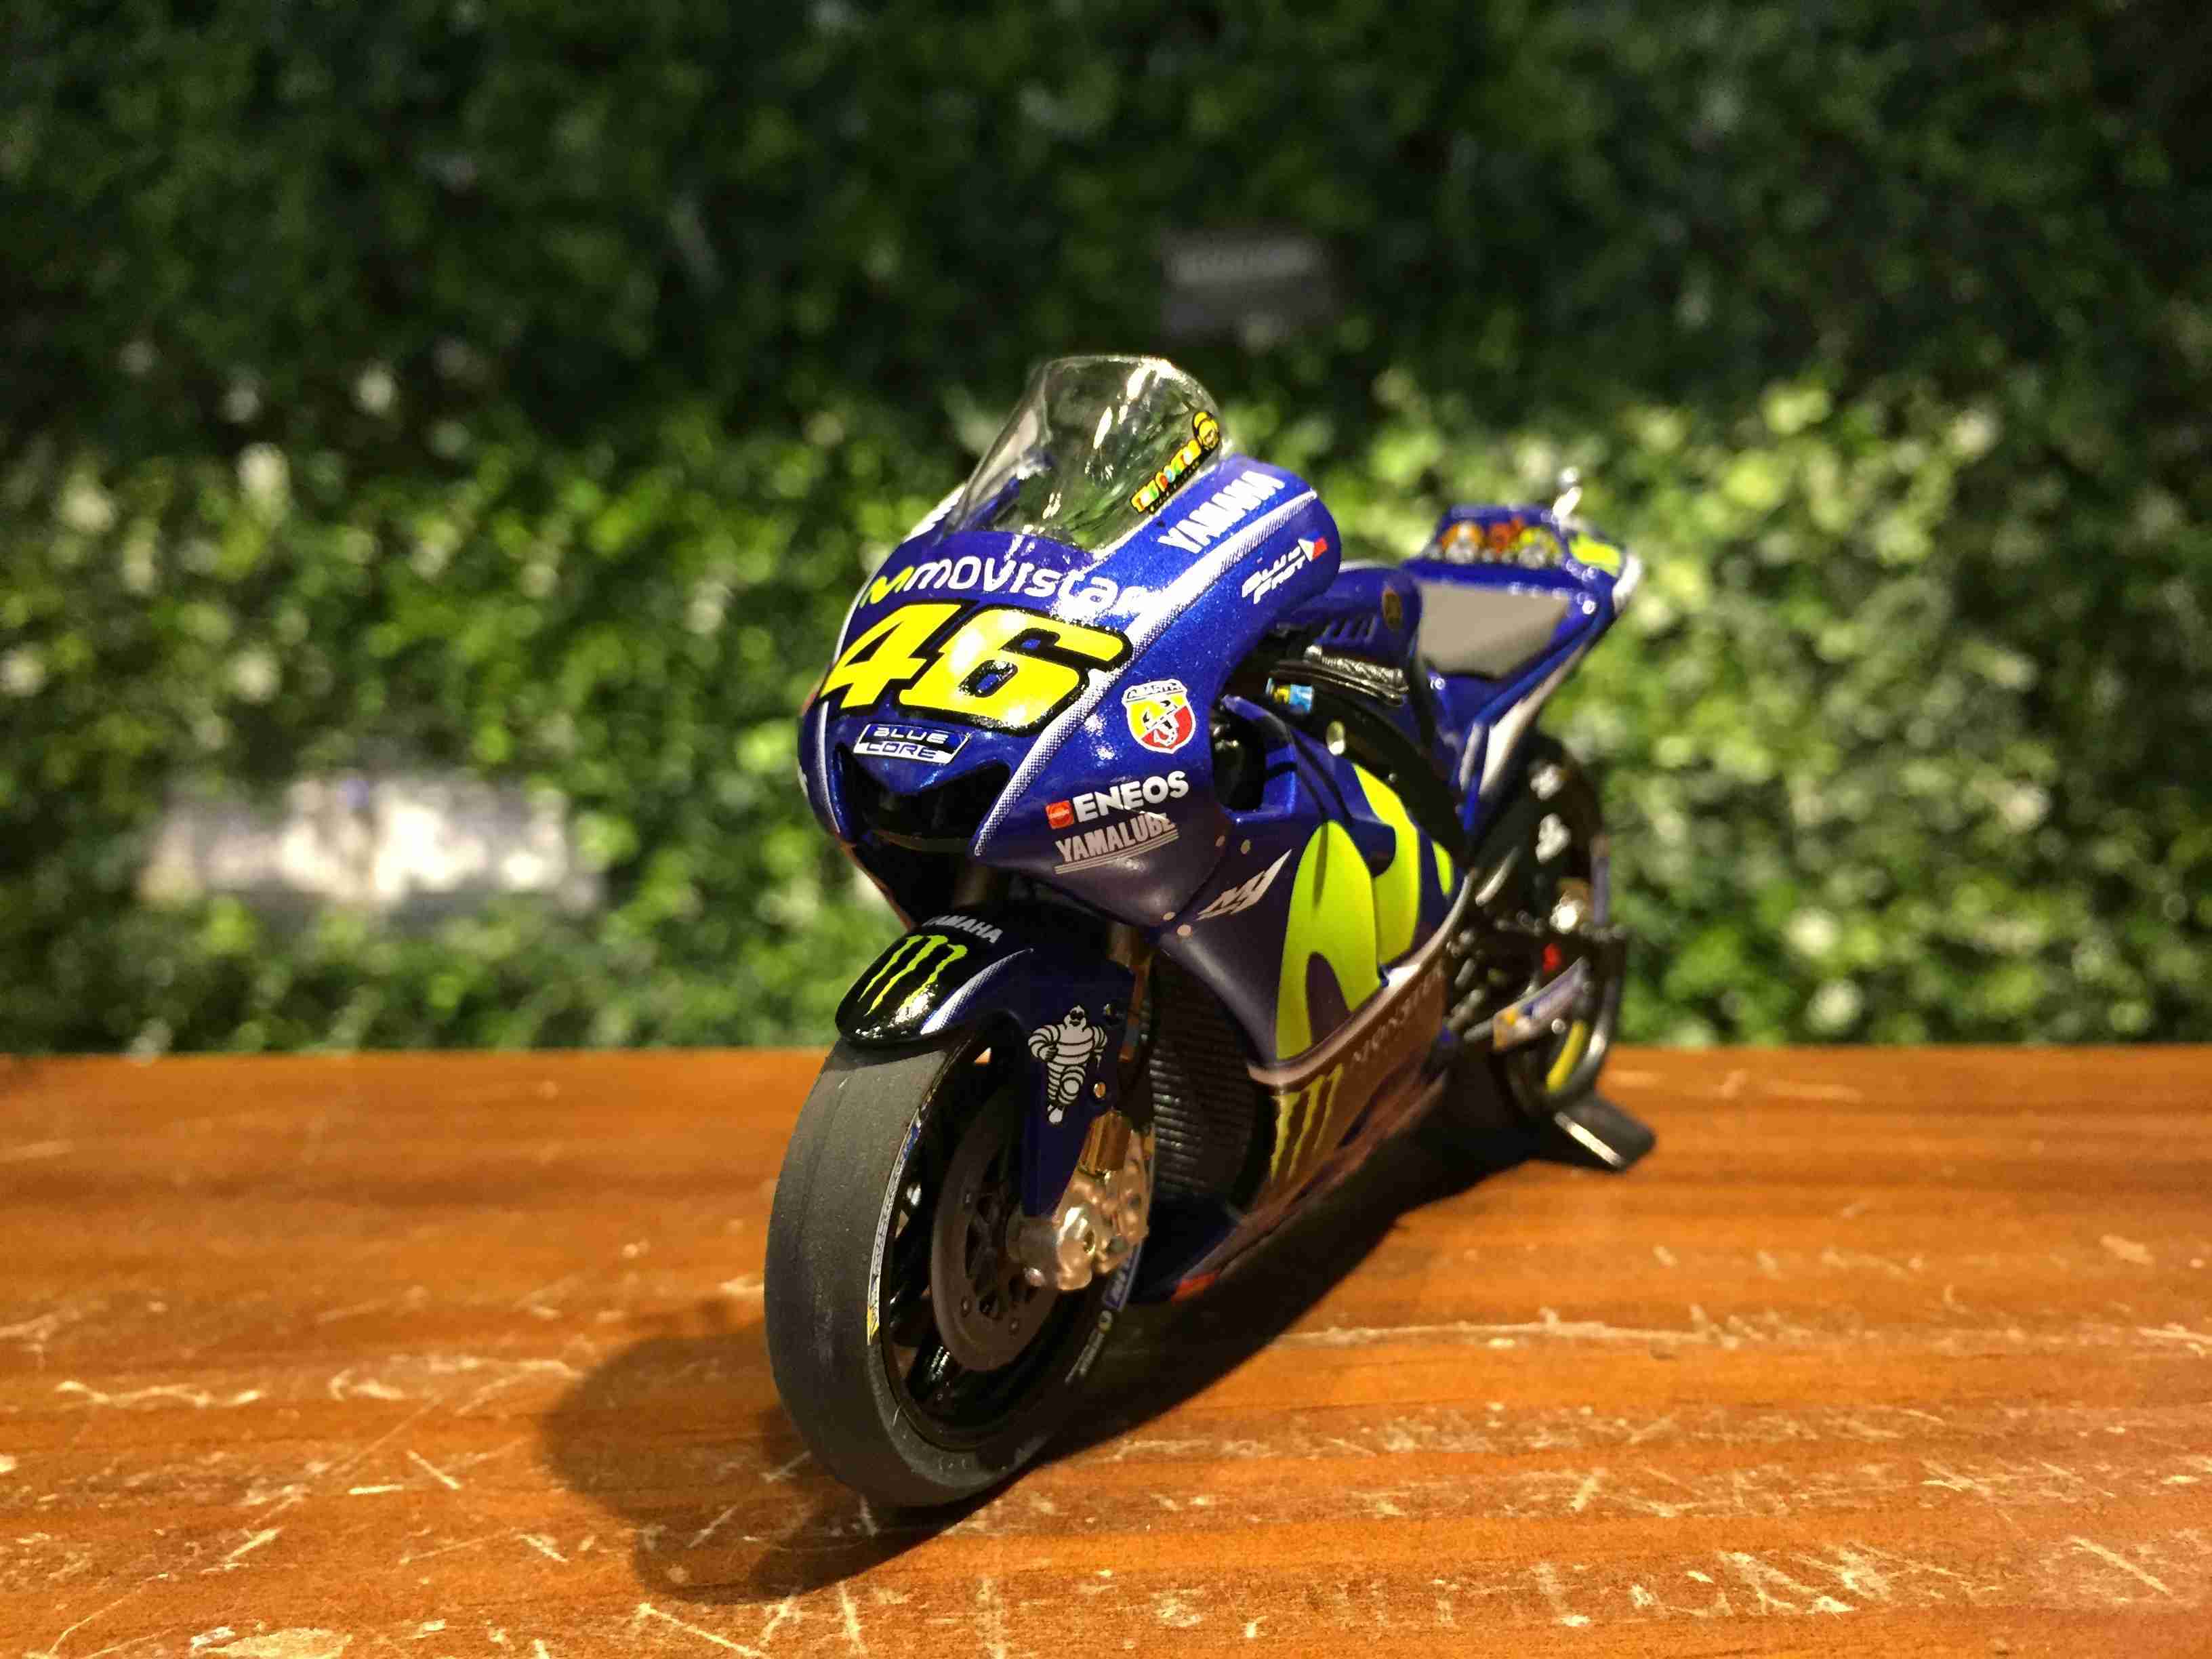 1/18 Minichamps Yamaha YZR-M1 V.Rossi MotoGP 182173146【MGM】